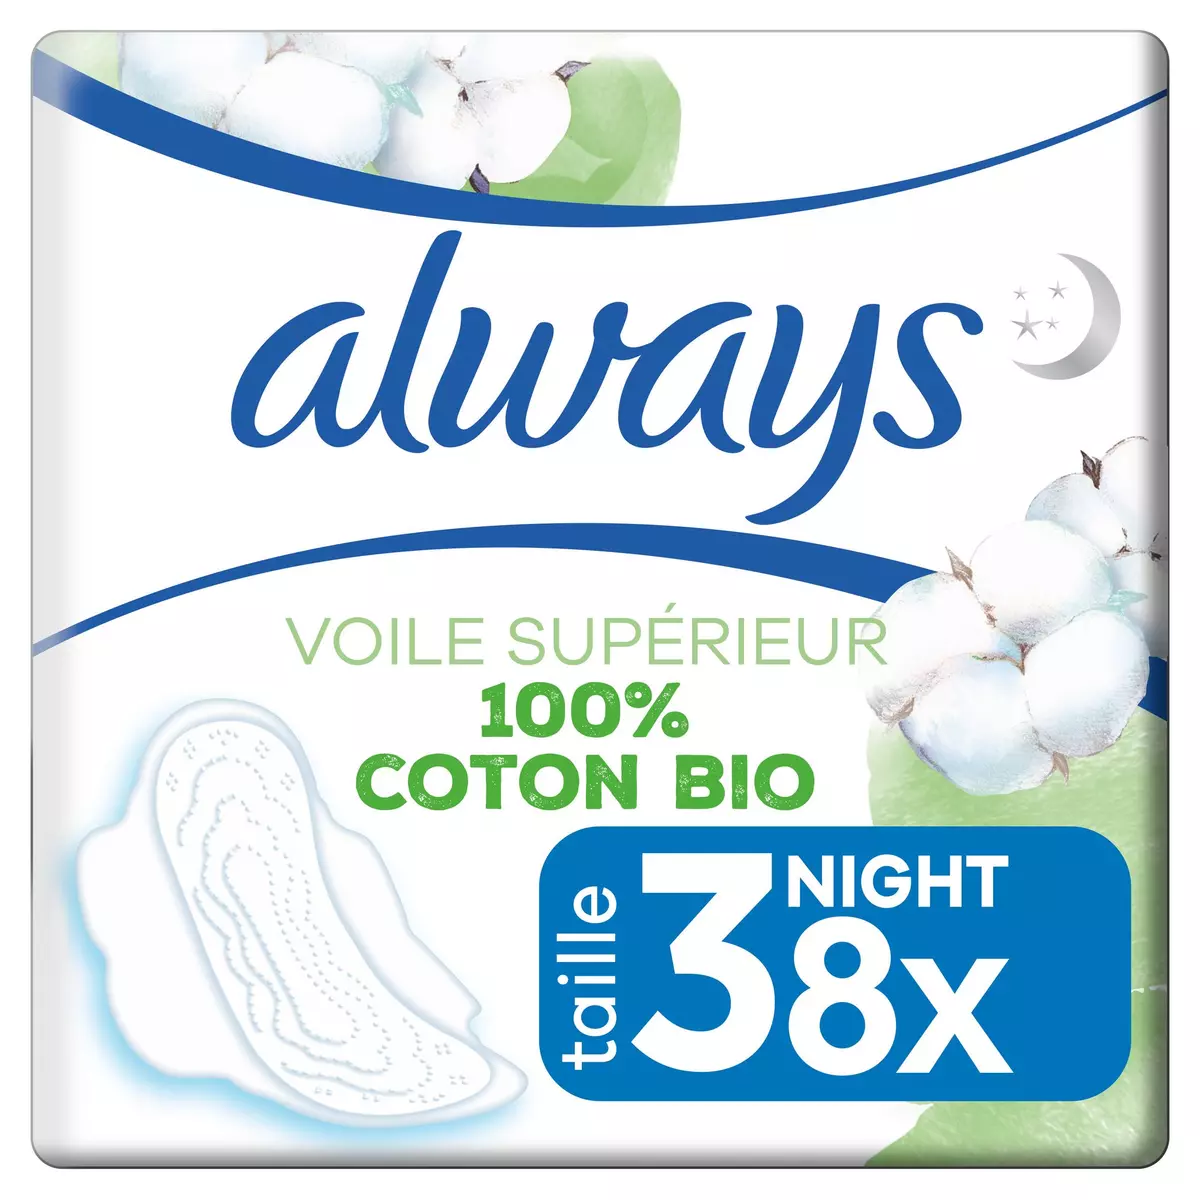 ALWAYS Serviettes hygiéniques coton bio nuit avec ailettes 8 serviettes